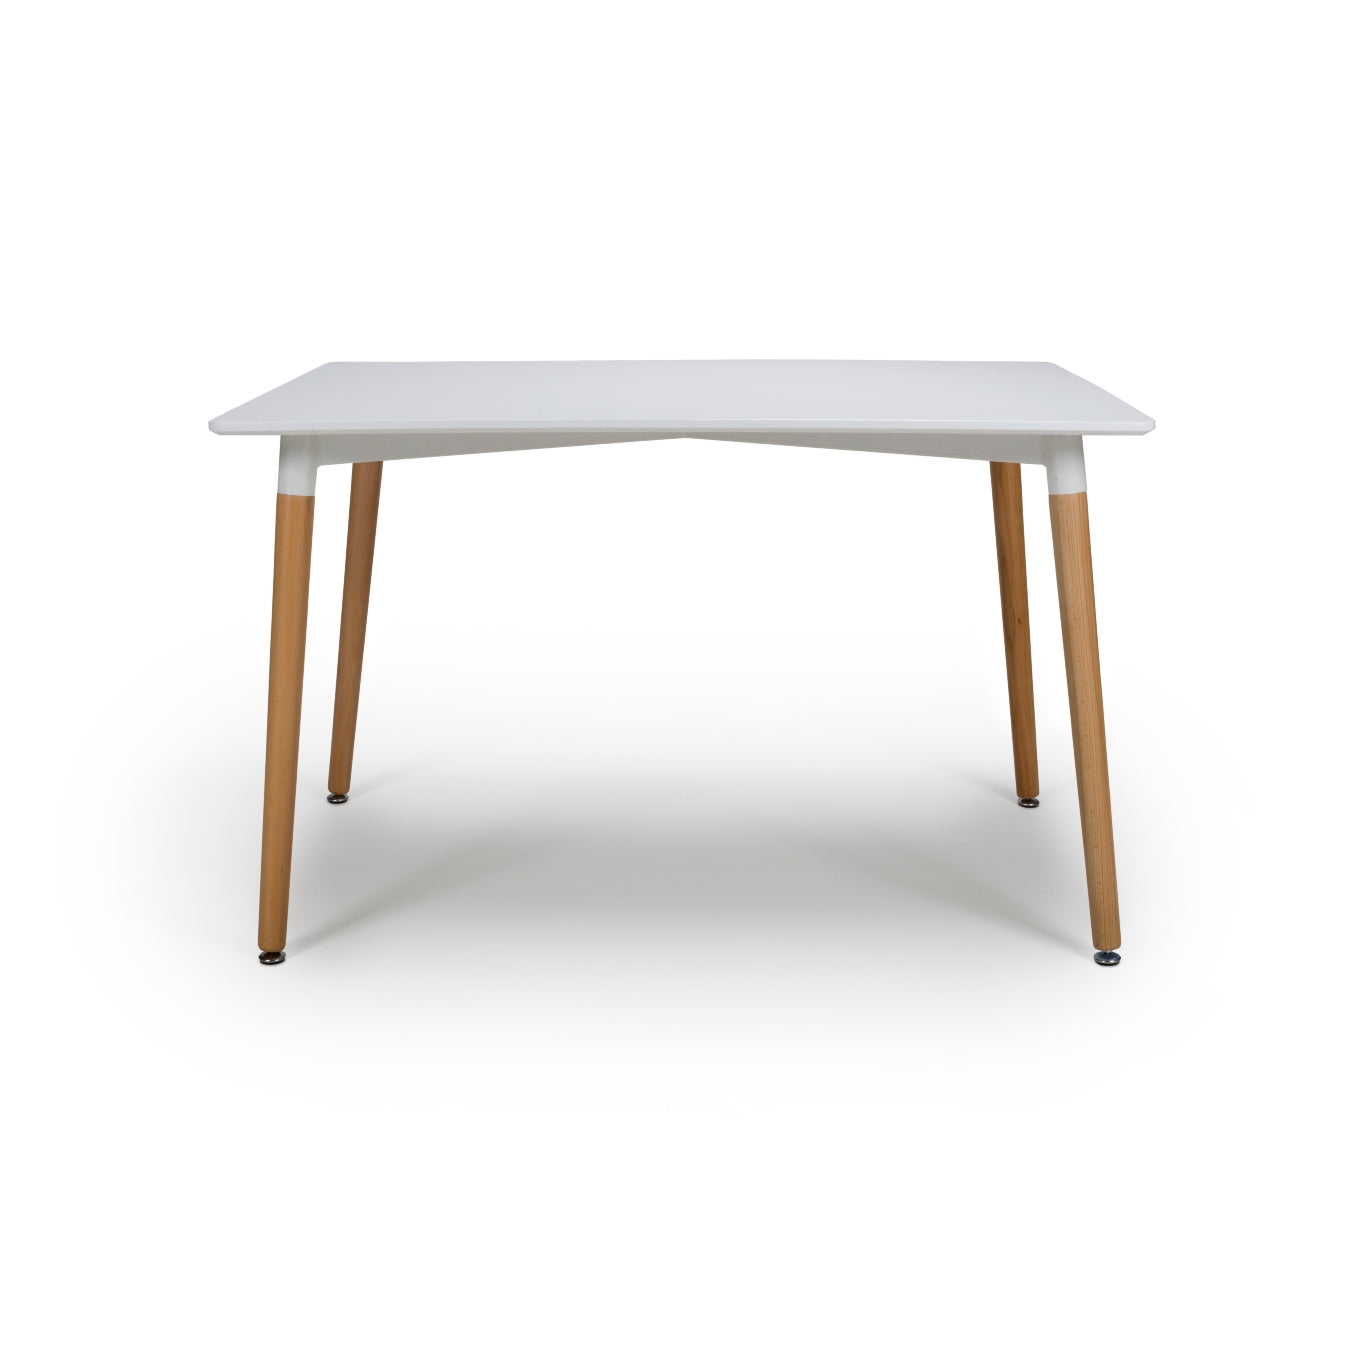 Elinnor Rectangular Table 1200mm - White